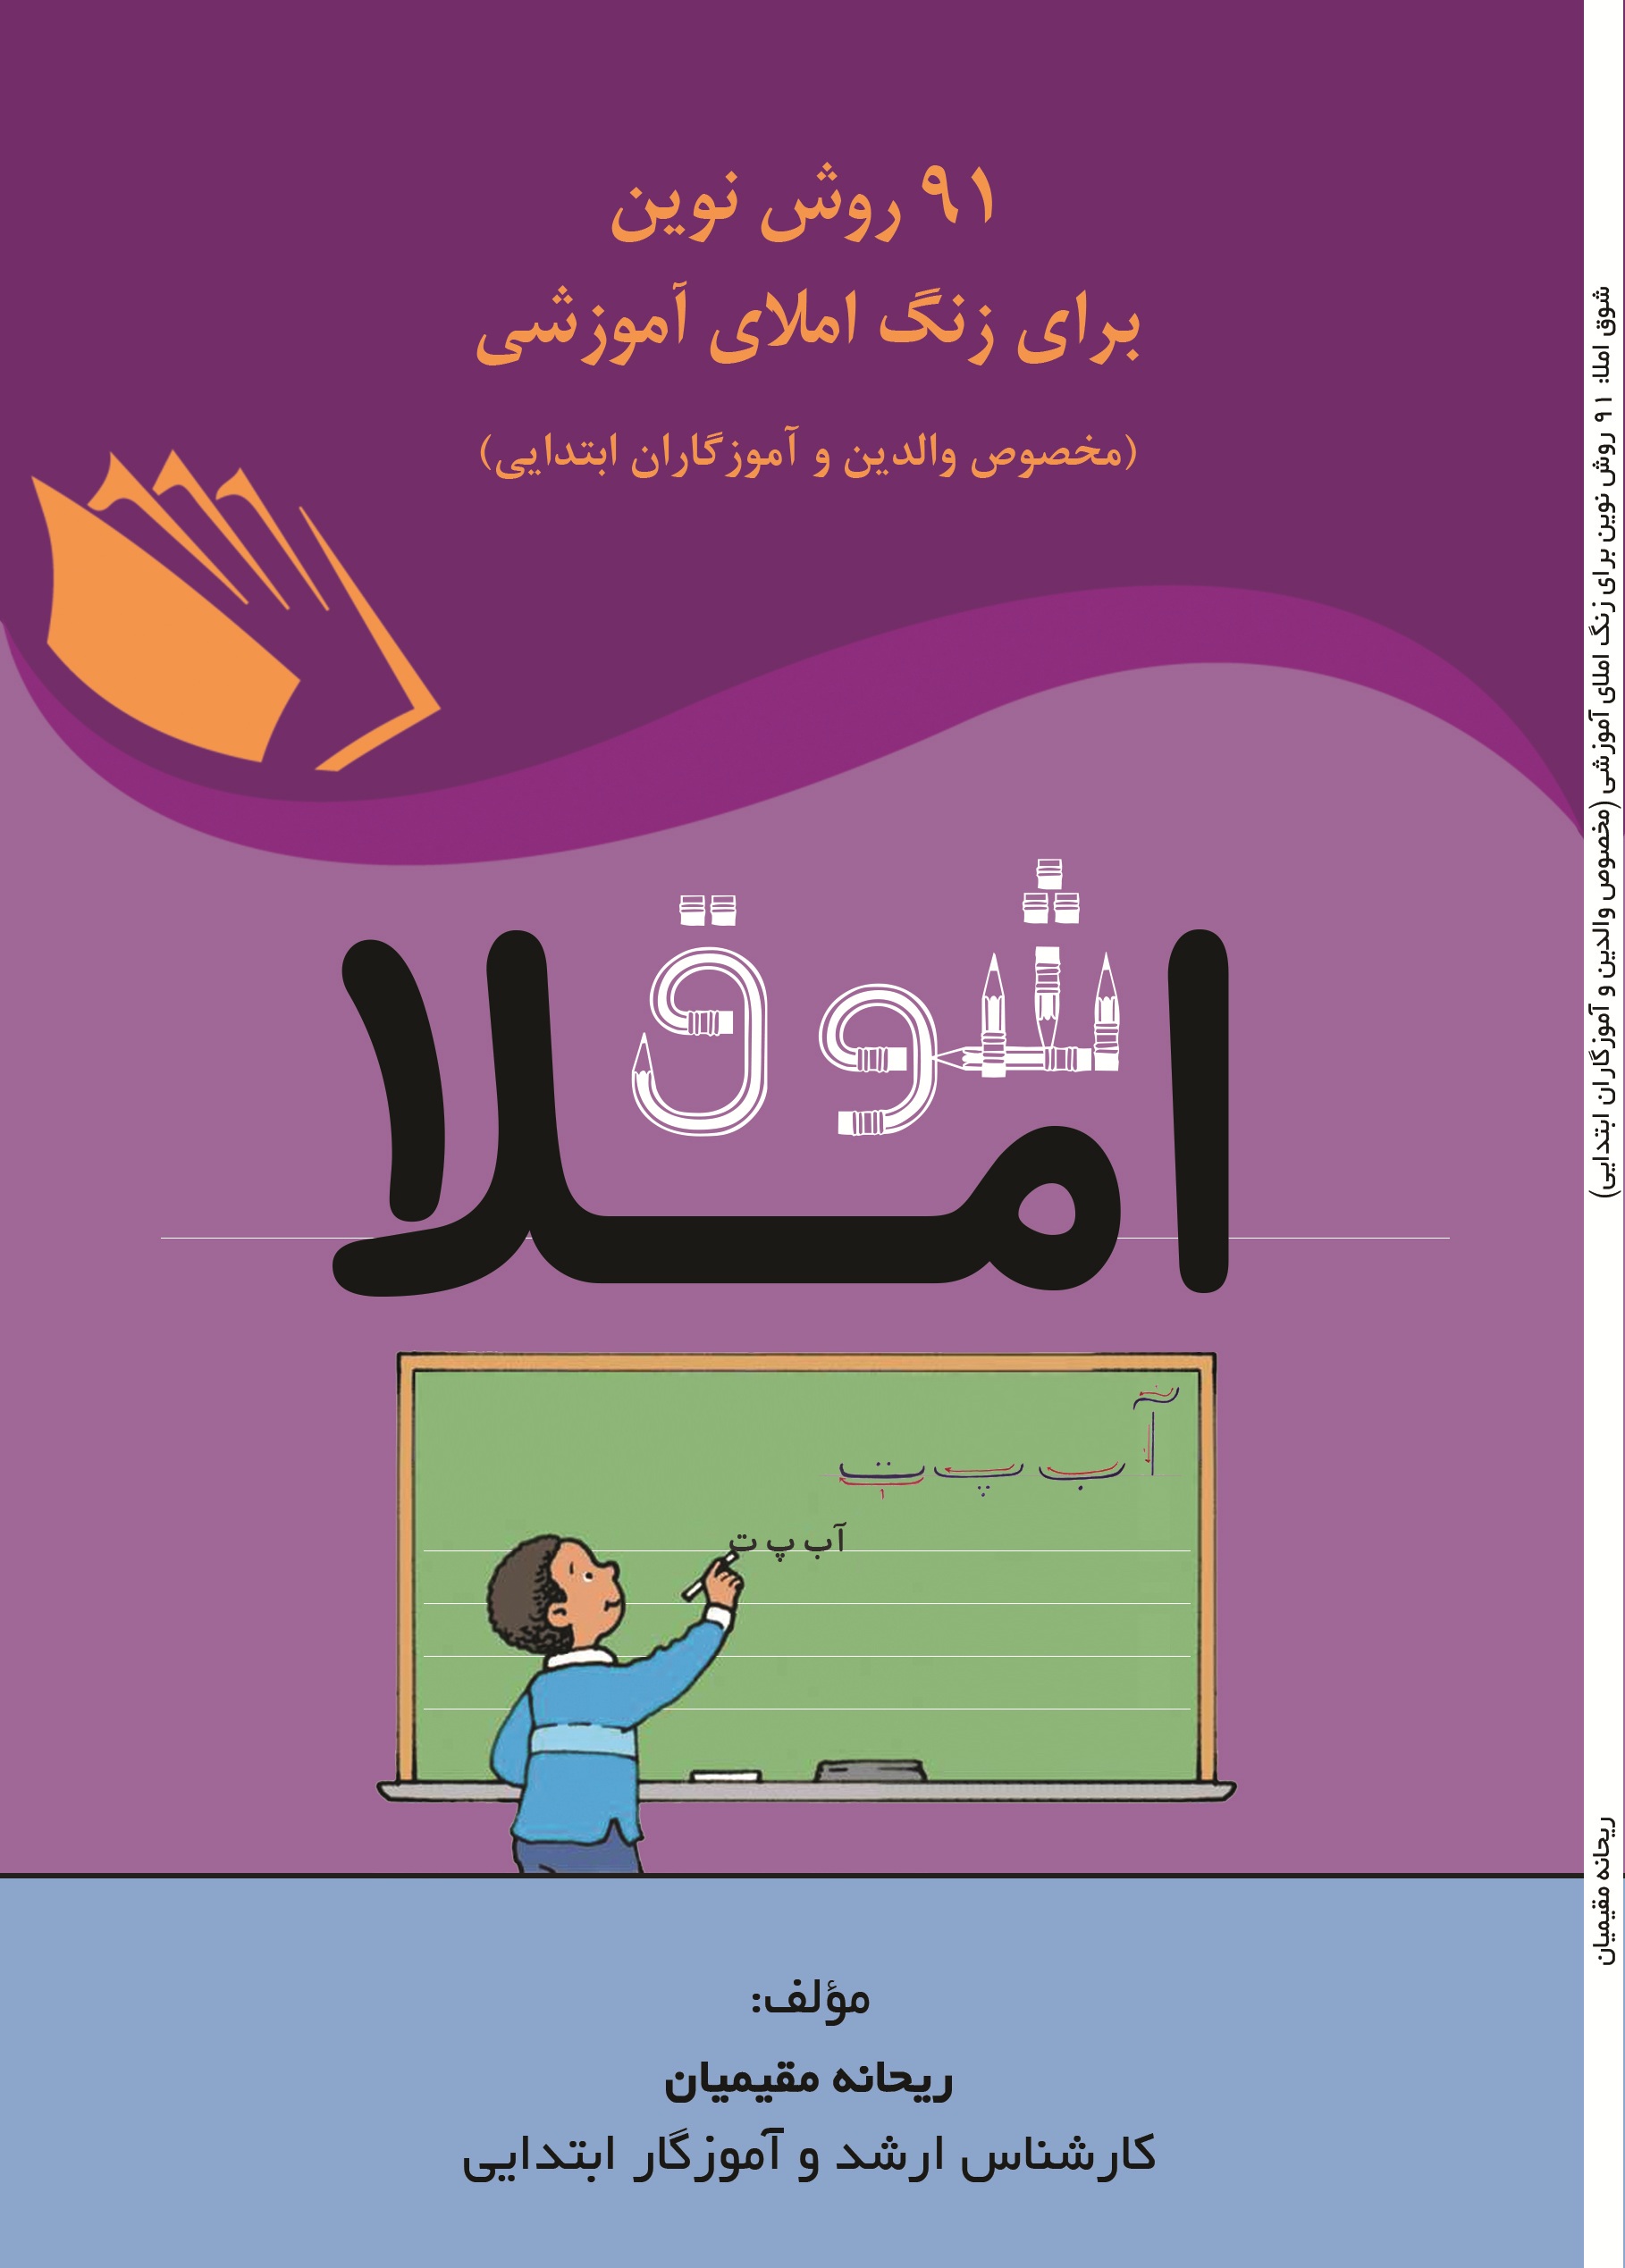 شوق املاء 91 روش نوین برای زنگ املای آموزشی (مخصوص والدین و آموزگاران ابتدایی)